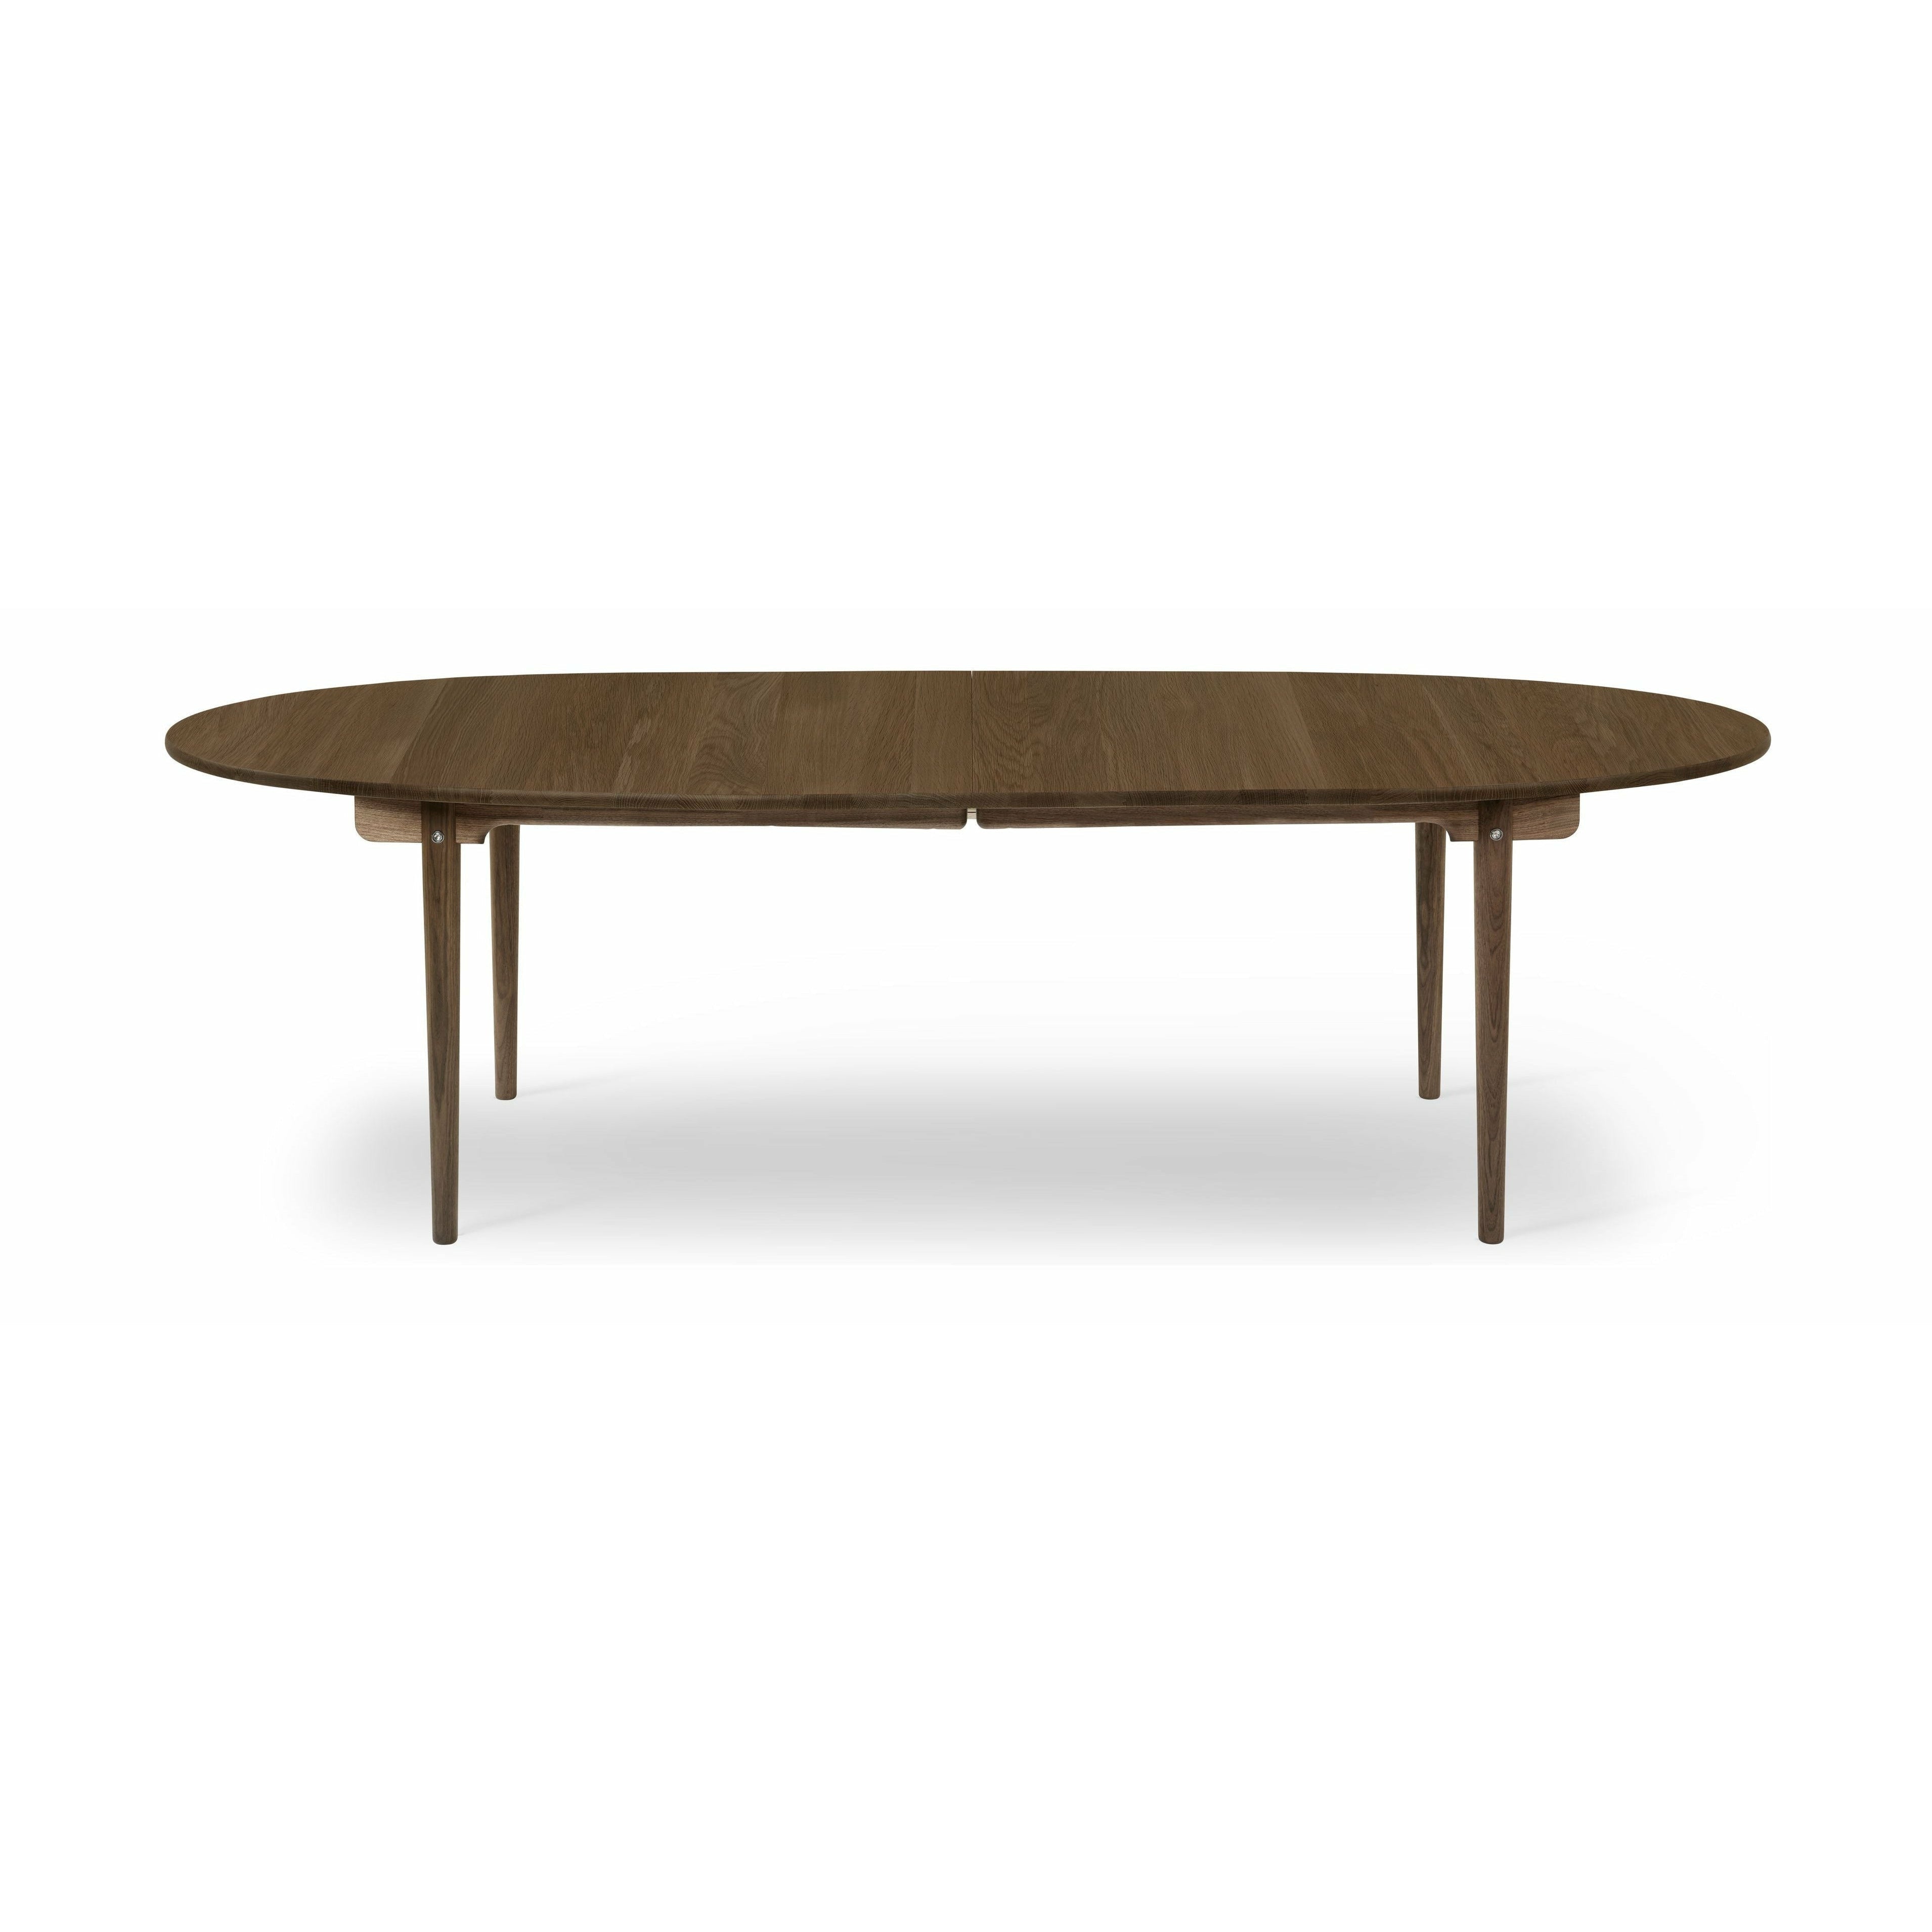 Carl Hansen CH339 matbord designat för 2 utdragsplattor, ekrökfärgad olja